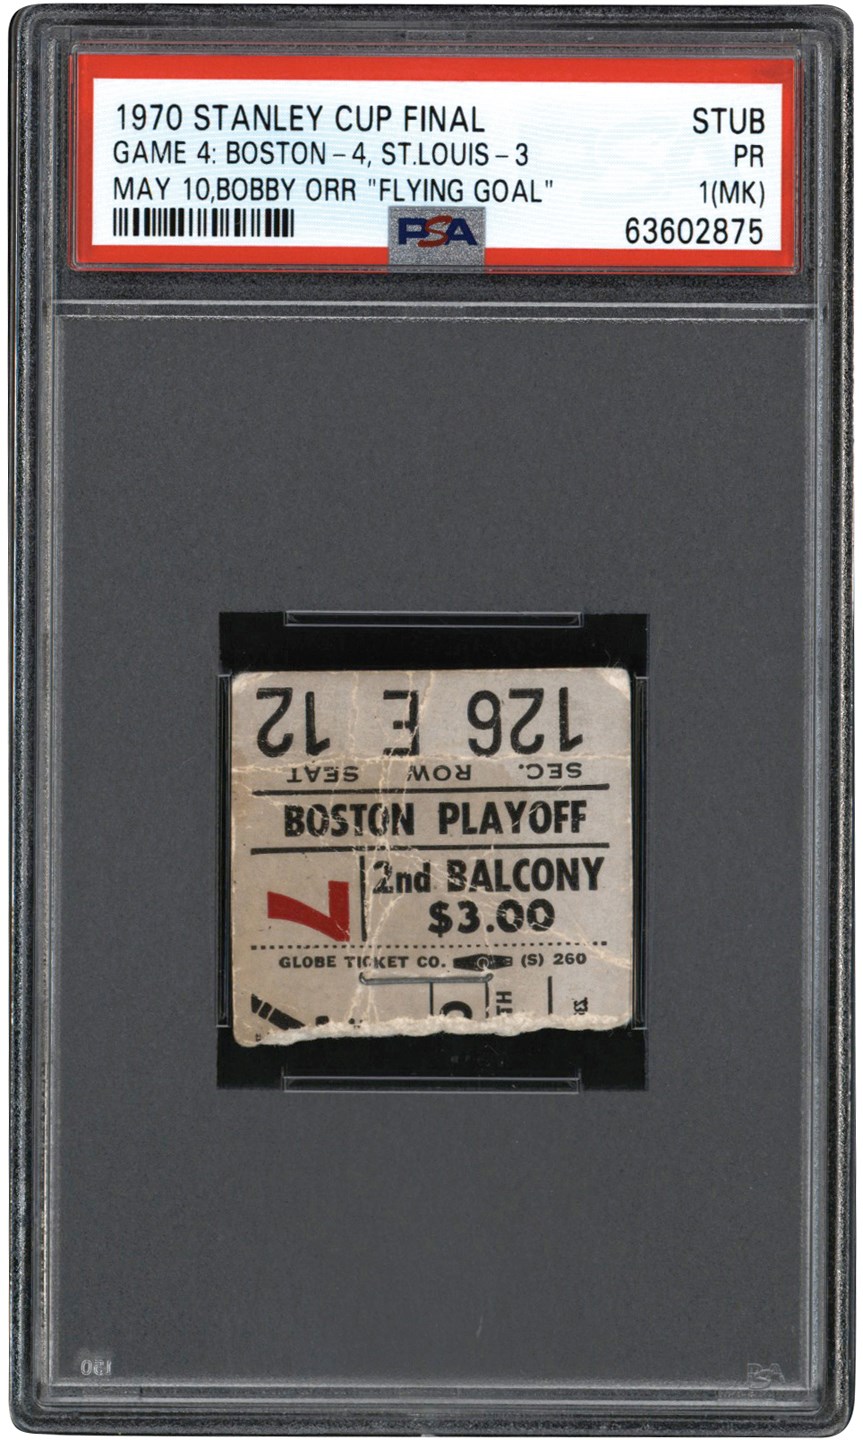 - 5/10/70 Bobby Orr "Flying Goal Game" Ticket Stub PSA PR 1 (mk)